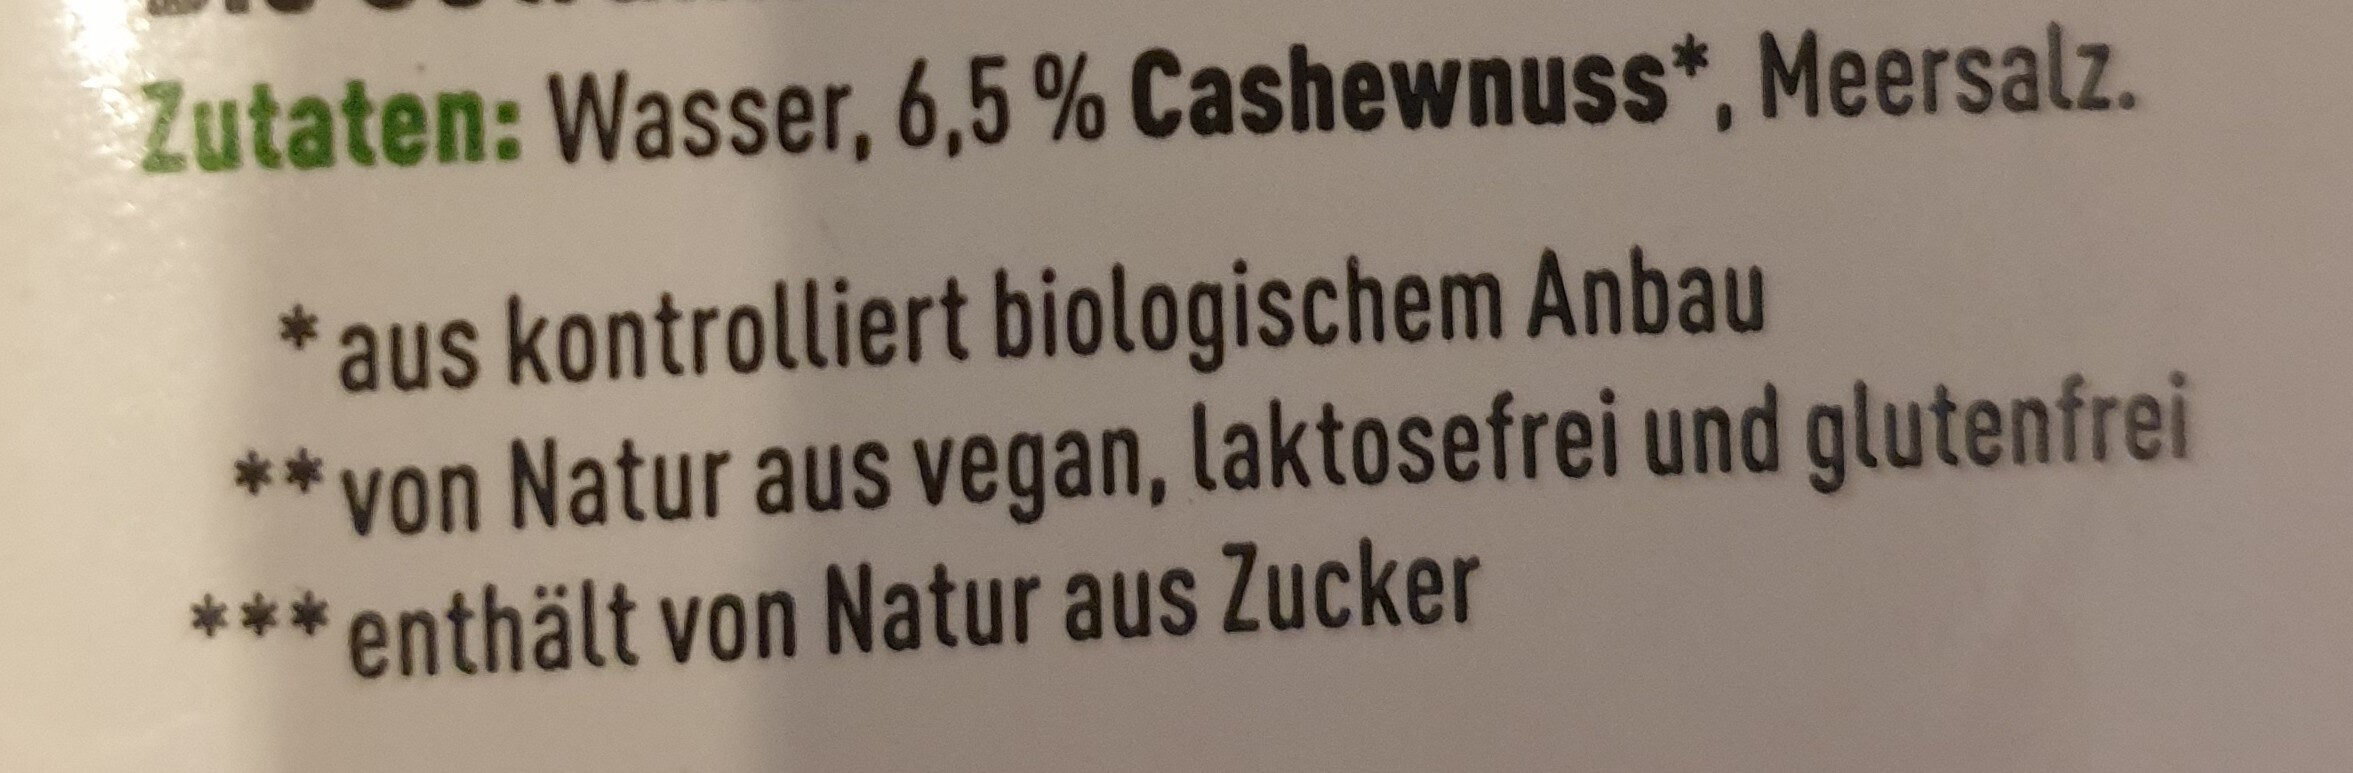 Cashew Drink Natur - Ingredients - de